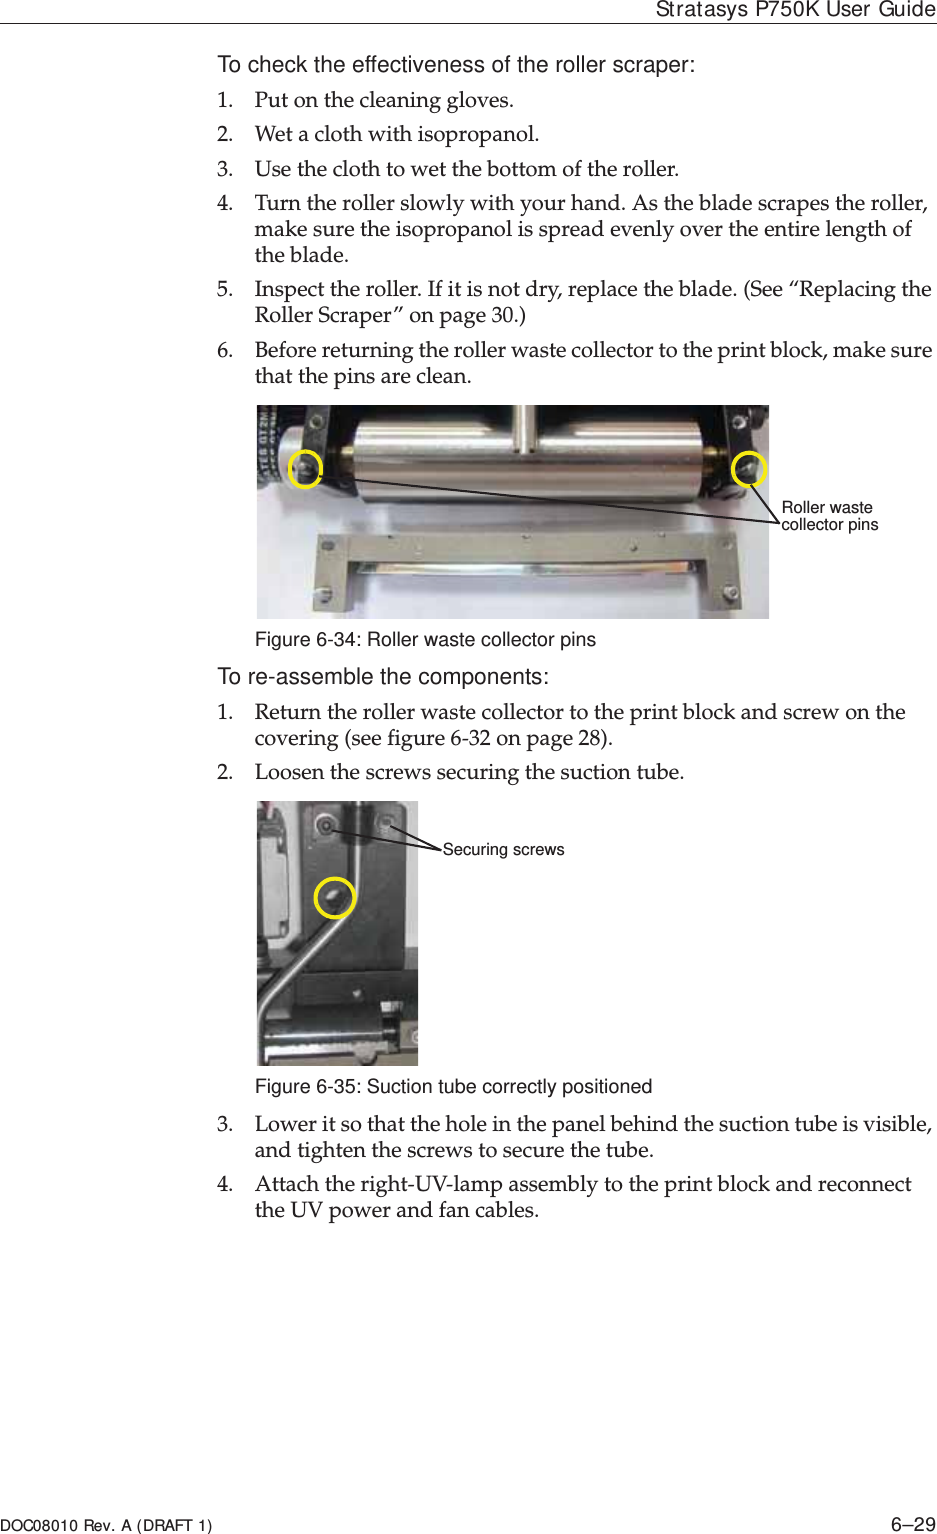 DOC08010 Rev. A (DRAFT 1) 6–29Stratasys P750K User GuideTo check the effectiveness of the roller scraper:1. Putȱonȱtheȱcleaningȱgloves.2. Wetȱaȱclothȱwithȱisopropanol.3. Useȱtheȱclothȱtoȱwetȱtheȱbottomȱofȱtheȱroller.4. Turnȱtheȱrollerȱslowlyȱwithȱyourȱhand.ȱAsȱtheȱbladeȱscrapesȱtheȱroller,ȱmakeȱsureȱtheȱisopropanolȱisȱspreadȱevenlyȱoverȱtheȱentireȱlengthȱofȱtheȱblade.5. Inspectȱtheȱroller.ȱIfȱitȱisȱnotȱdry,ȱreplaceȱtheȱblade.ȱ(Seeȱ“ReplacingȱtheȱRollerȱScraper”ȱonȱpage 30.)6. Beforeȱreturningȱtheȱrollerȱwasteȱcollectorȱtoȱtheȱprintȱblock,ȱmakeȱsureȱthatȱtheȱpinsȱareȱclean.ȱFigure 6-34: Roller waste collector pinsTo re-assemble the components:1. Returnȱtheȱrollerȱwasteȱcollectorȱtoȱtheȱprintȱblockȱandȱscrewȱonȱtheȱcoveringȱ(seeȱfigure 6Ȭ32ȱonȱpage 28).2. Loosenȱtheȱscrewsȱsecuringȱtheȱsuctionȱtube.Figure 6-35: Suction tube correctly positioned3. Lowerȱitȱsoȱthatȱtheȱholeȱinȱtheȱpanelȱbehindȱtheȱsuctionȱtubeȱisȱvisible,ȱandȱtightenȱtheȱscrewsȱtoȱsecureȱtheȱtube.ȱ4. AttachȱtheȱrightȬUVȬlampȱassemblyȱtoȱtheȱprintȱblockȱandȱreconnectȱtheȱUVȱpowerȱandȱfanȱcables.Roller waste collector pinsSecuring screws